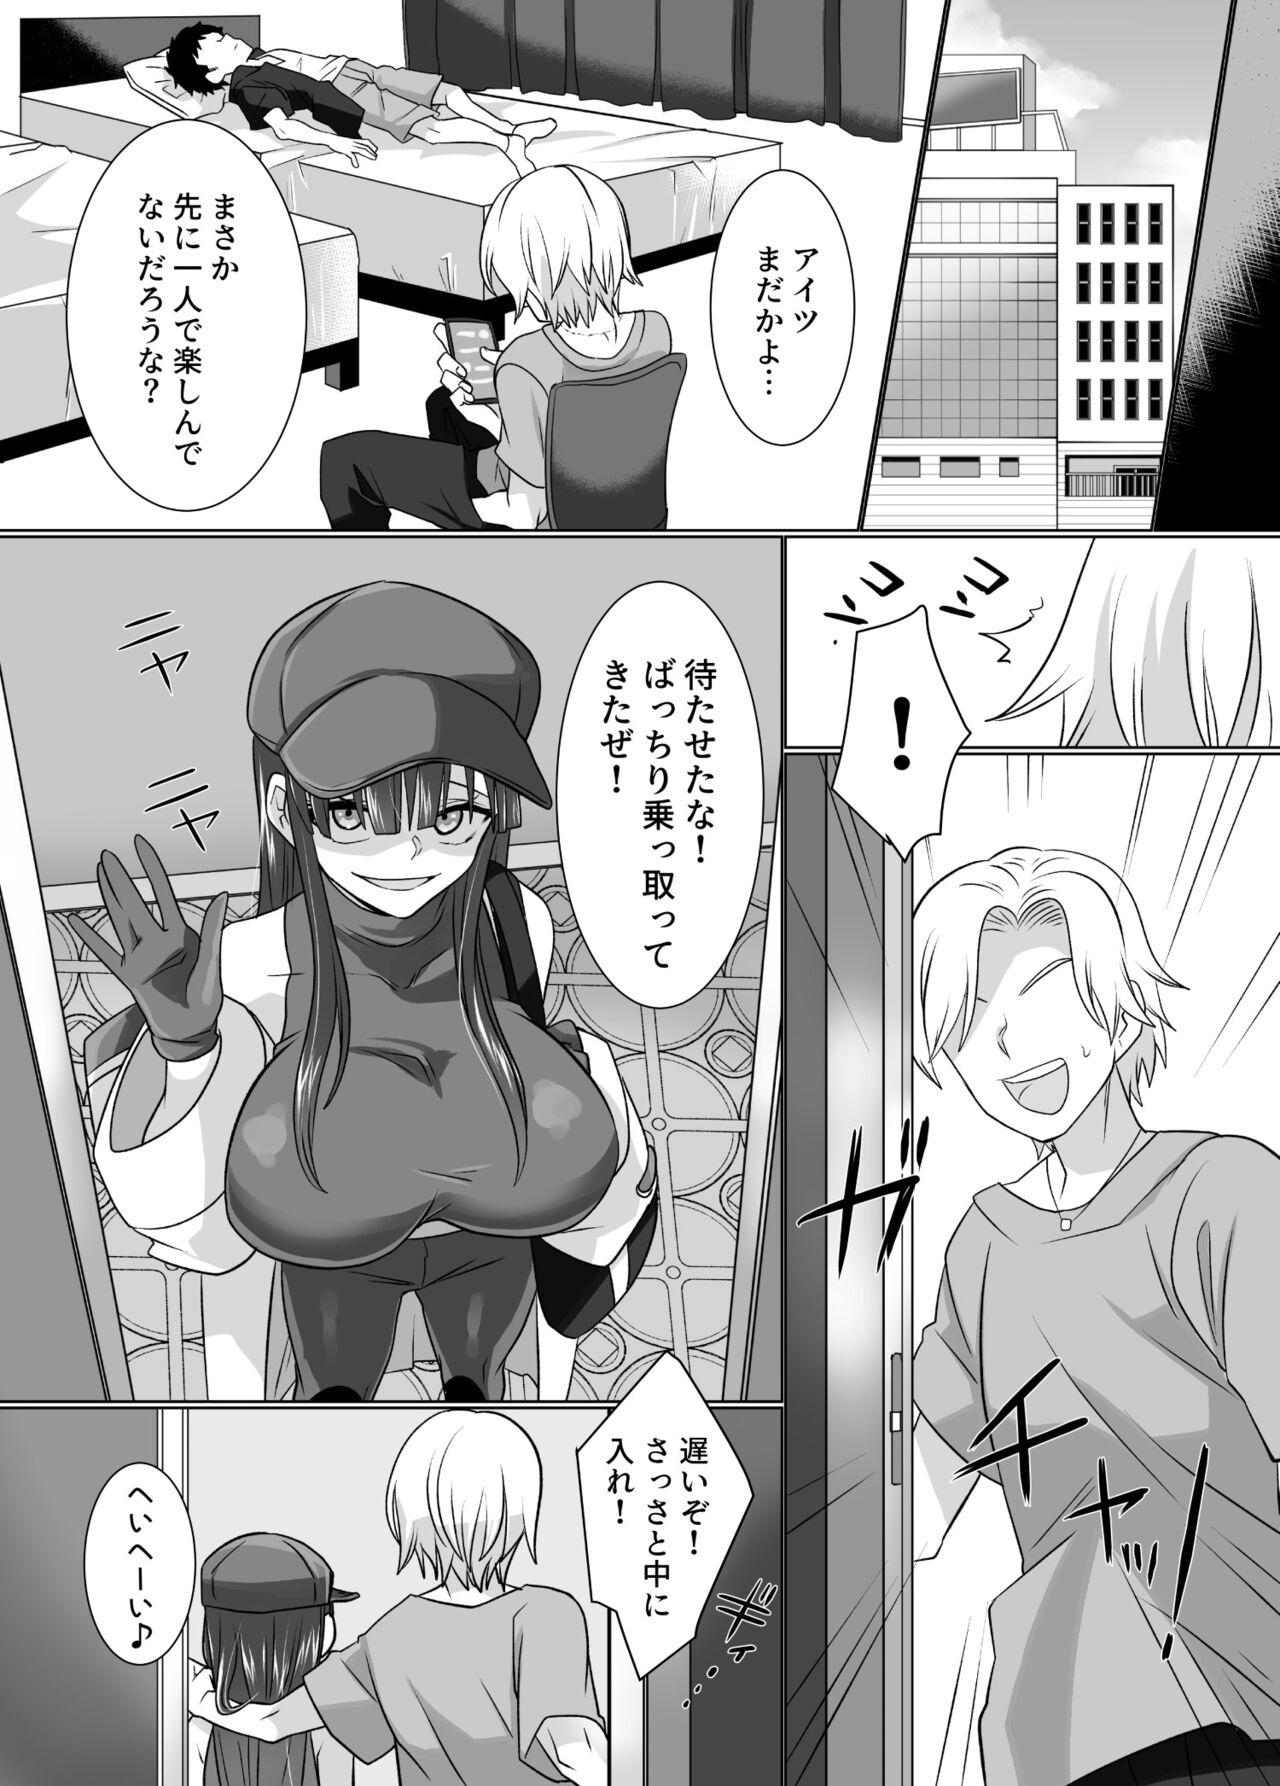 Sapphicerotica komike de hyoui！ buru aka dosukebe kosupureiya- wo no xtu to ri teikuauto - Blue archive Officesex - Page 6